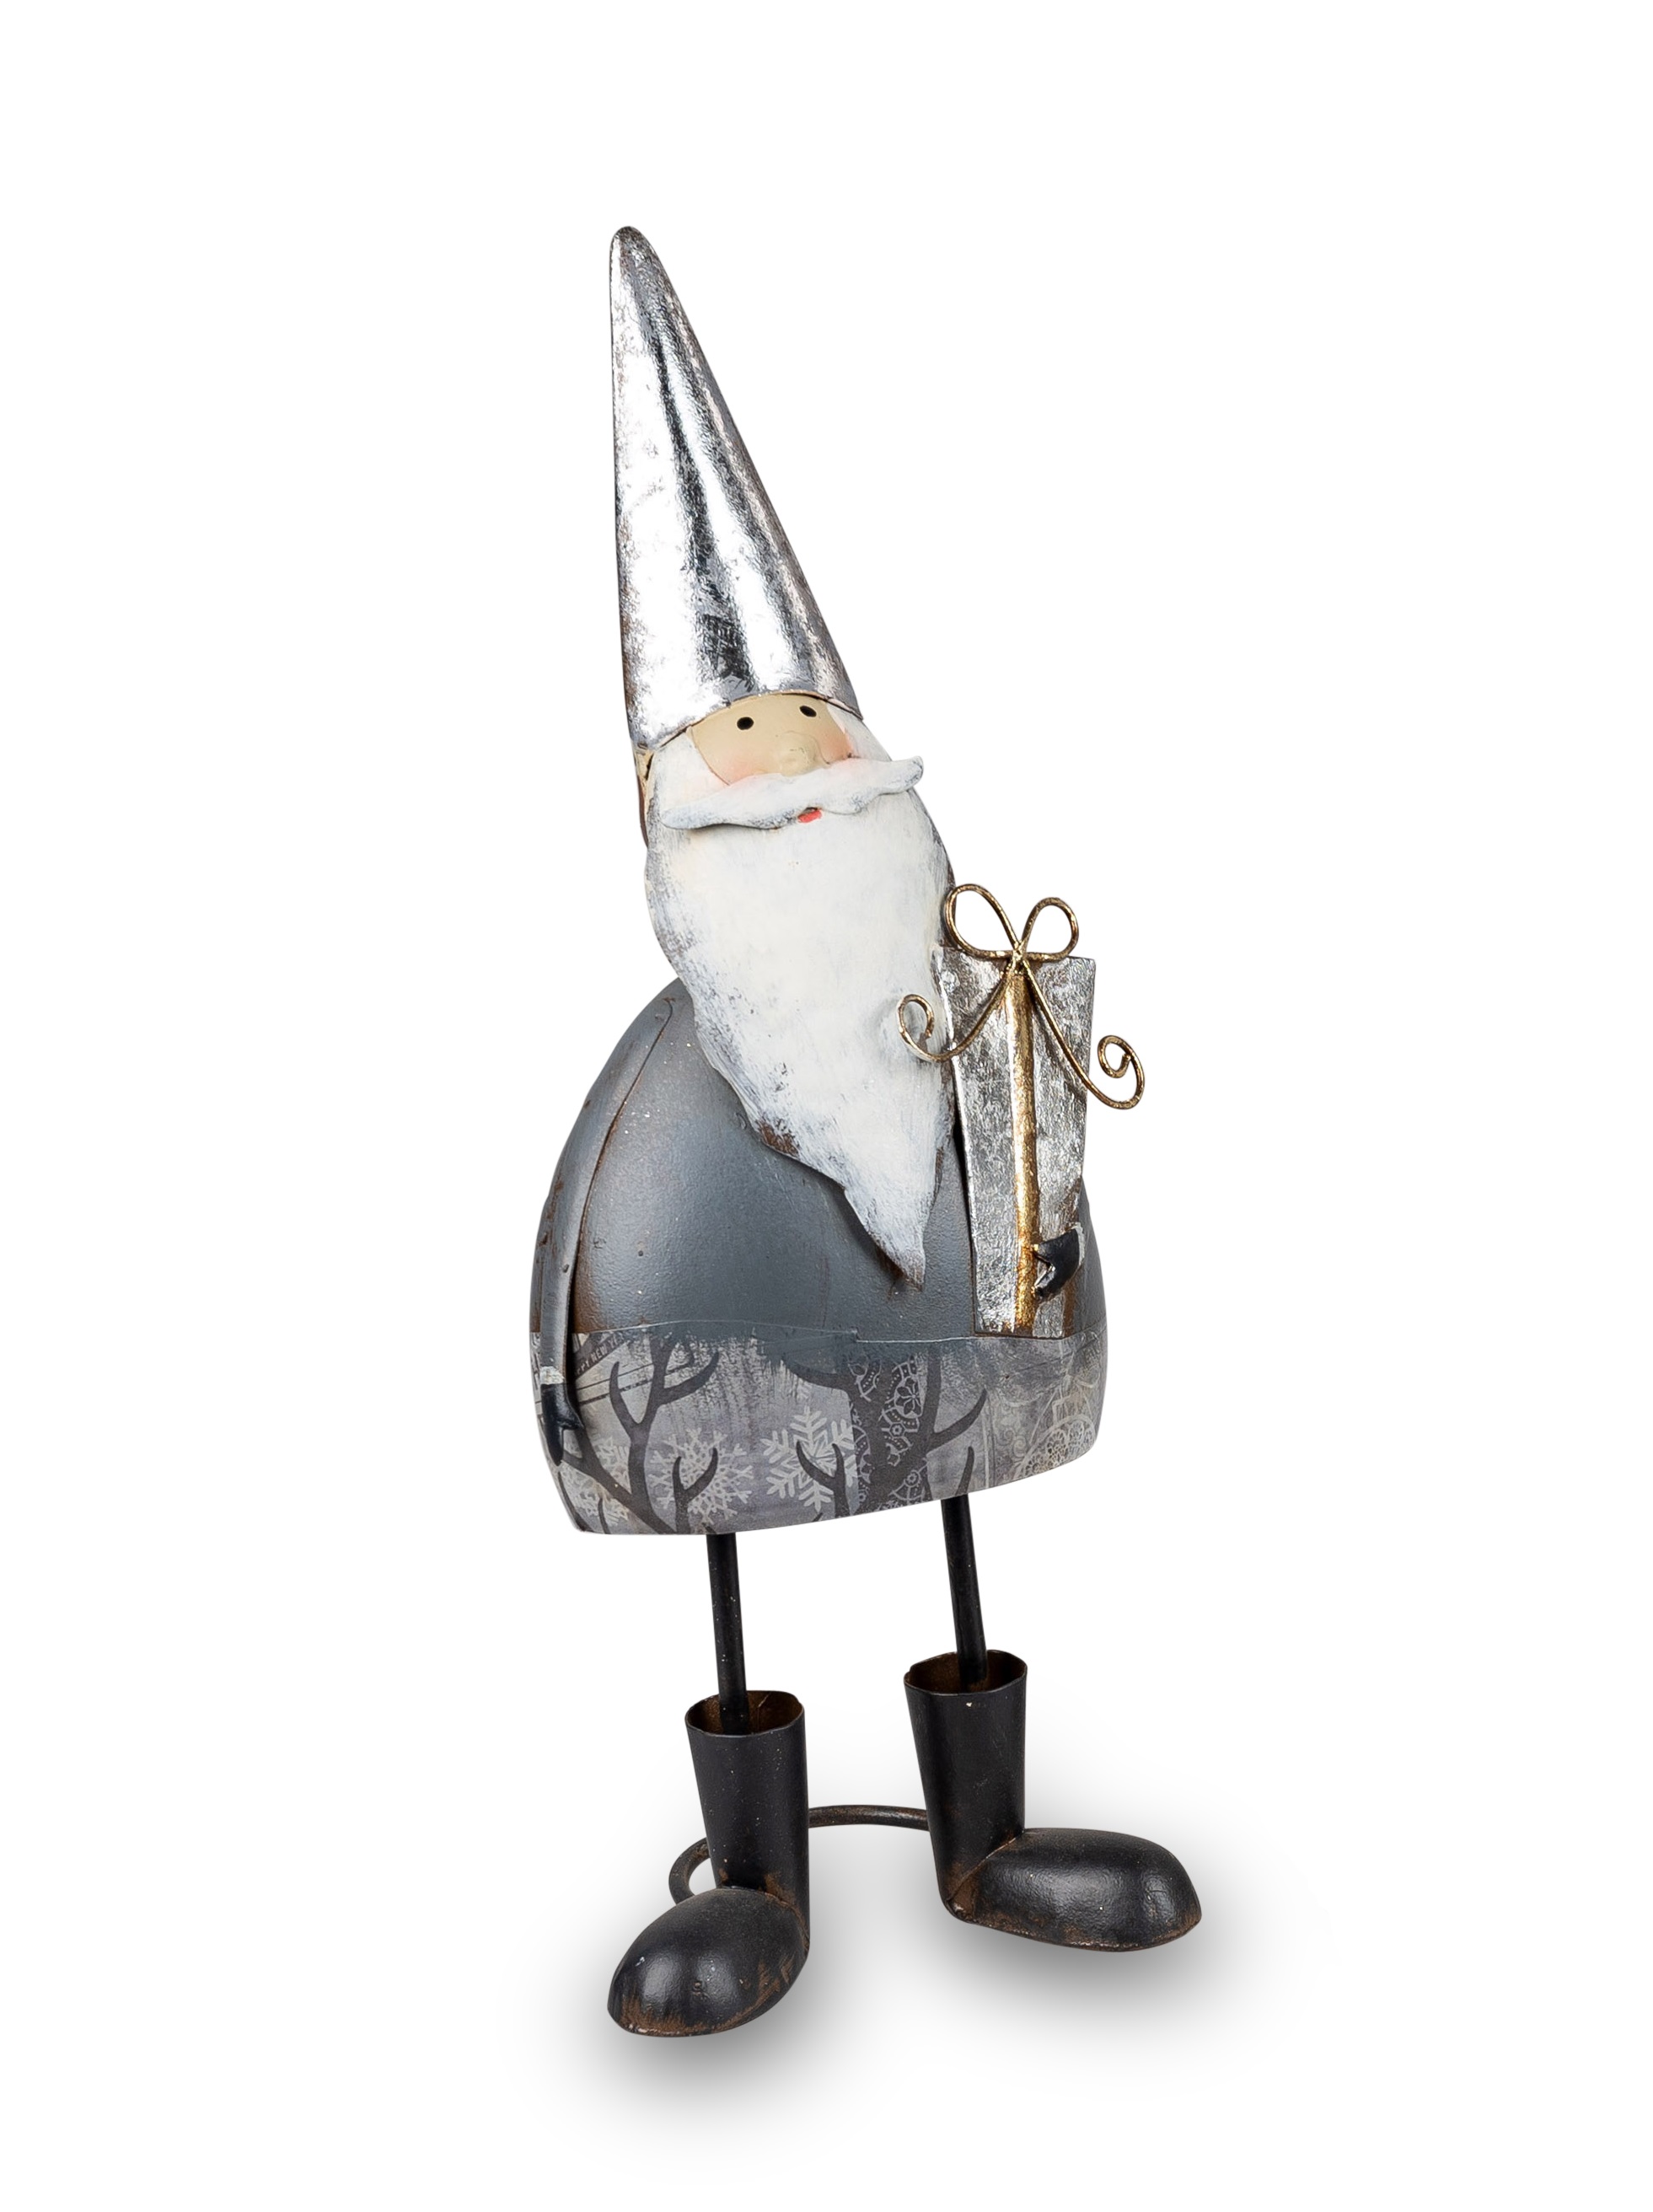 Deko Figur Santa 30cm m. Geschenk aus Metall Winterzeit formano